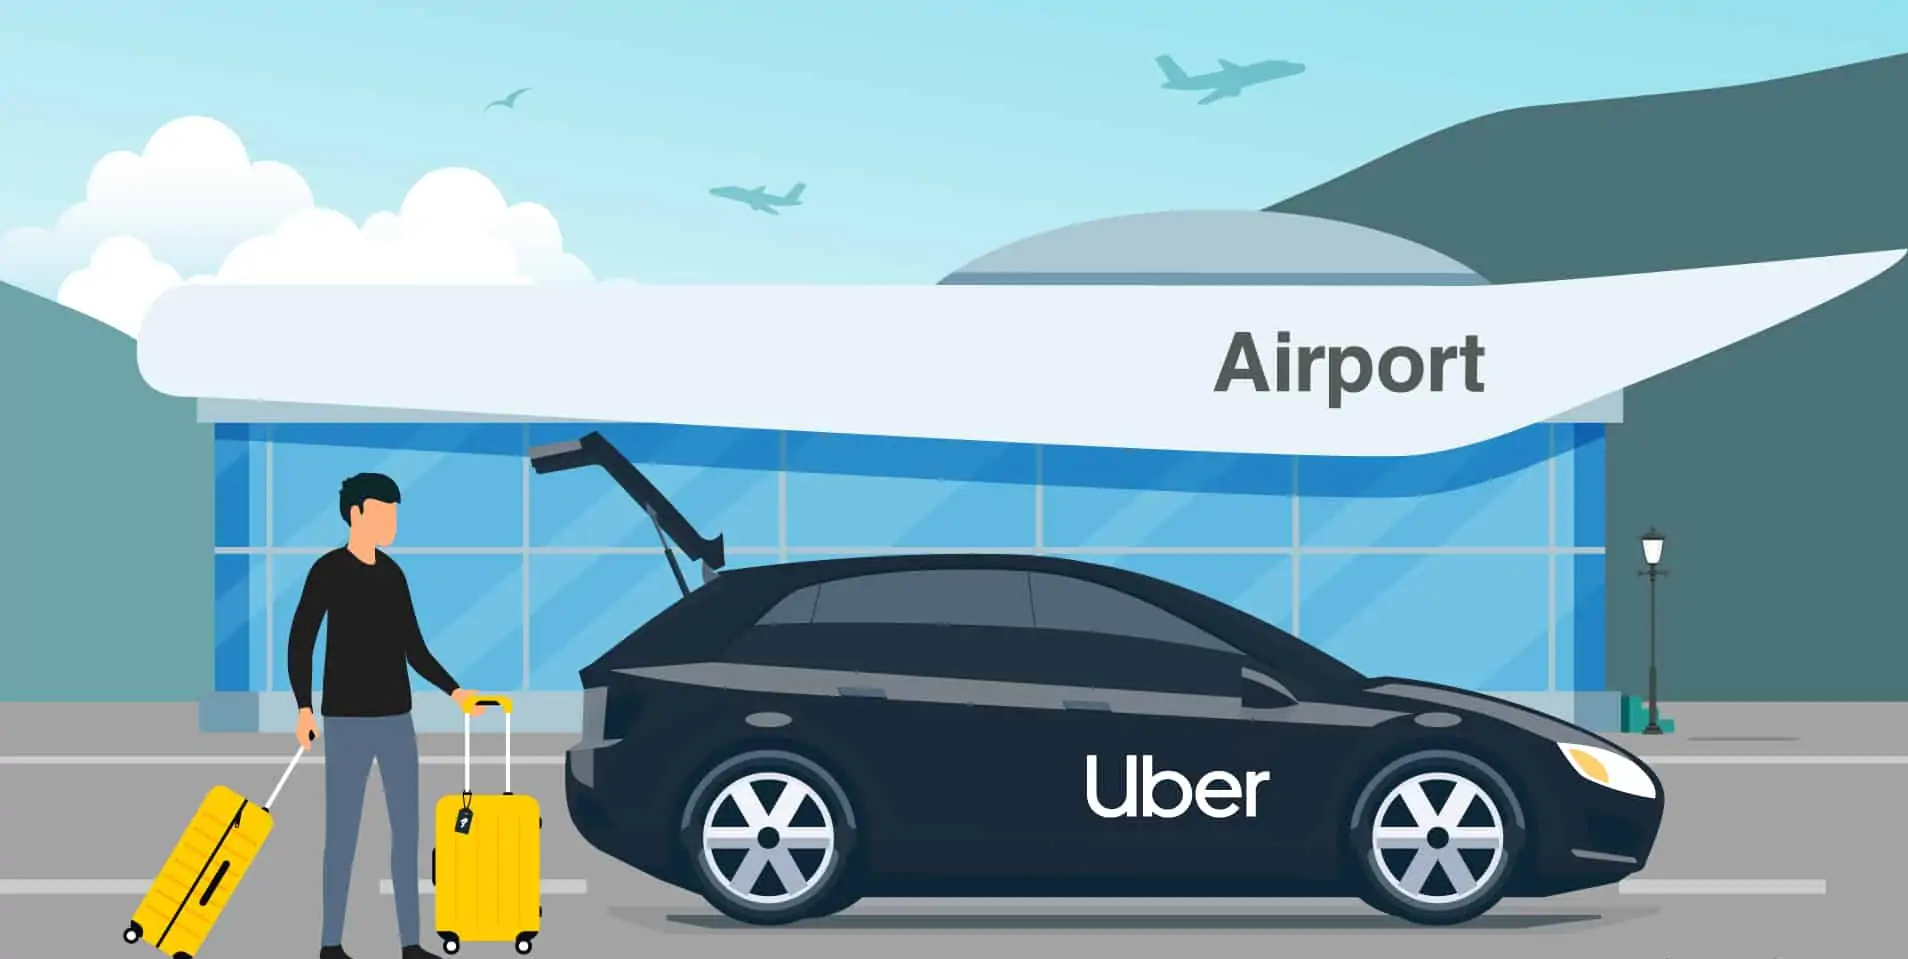 ¿Qué es UberX y cómo funciona para los pasajeros?